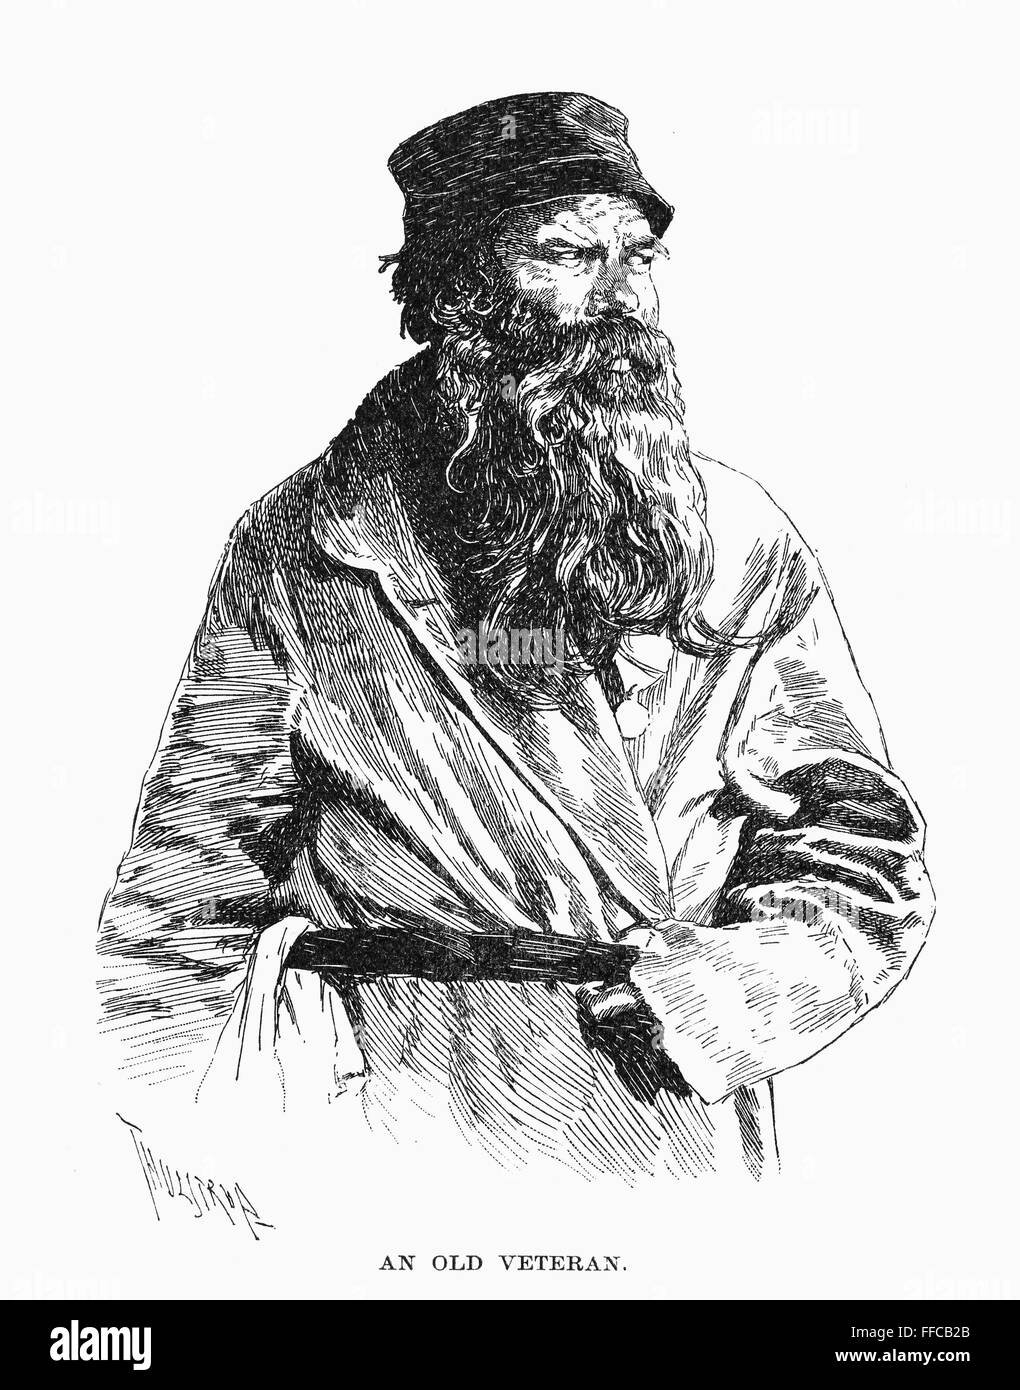 RUSSISCHE VETERANEN, 1890. /nAn alte russische Veteranen. Zeichnung, 1890 von Thure de Thulstrup. Stockfoto